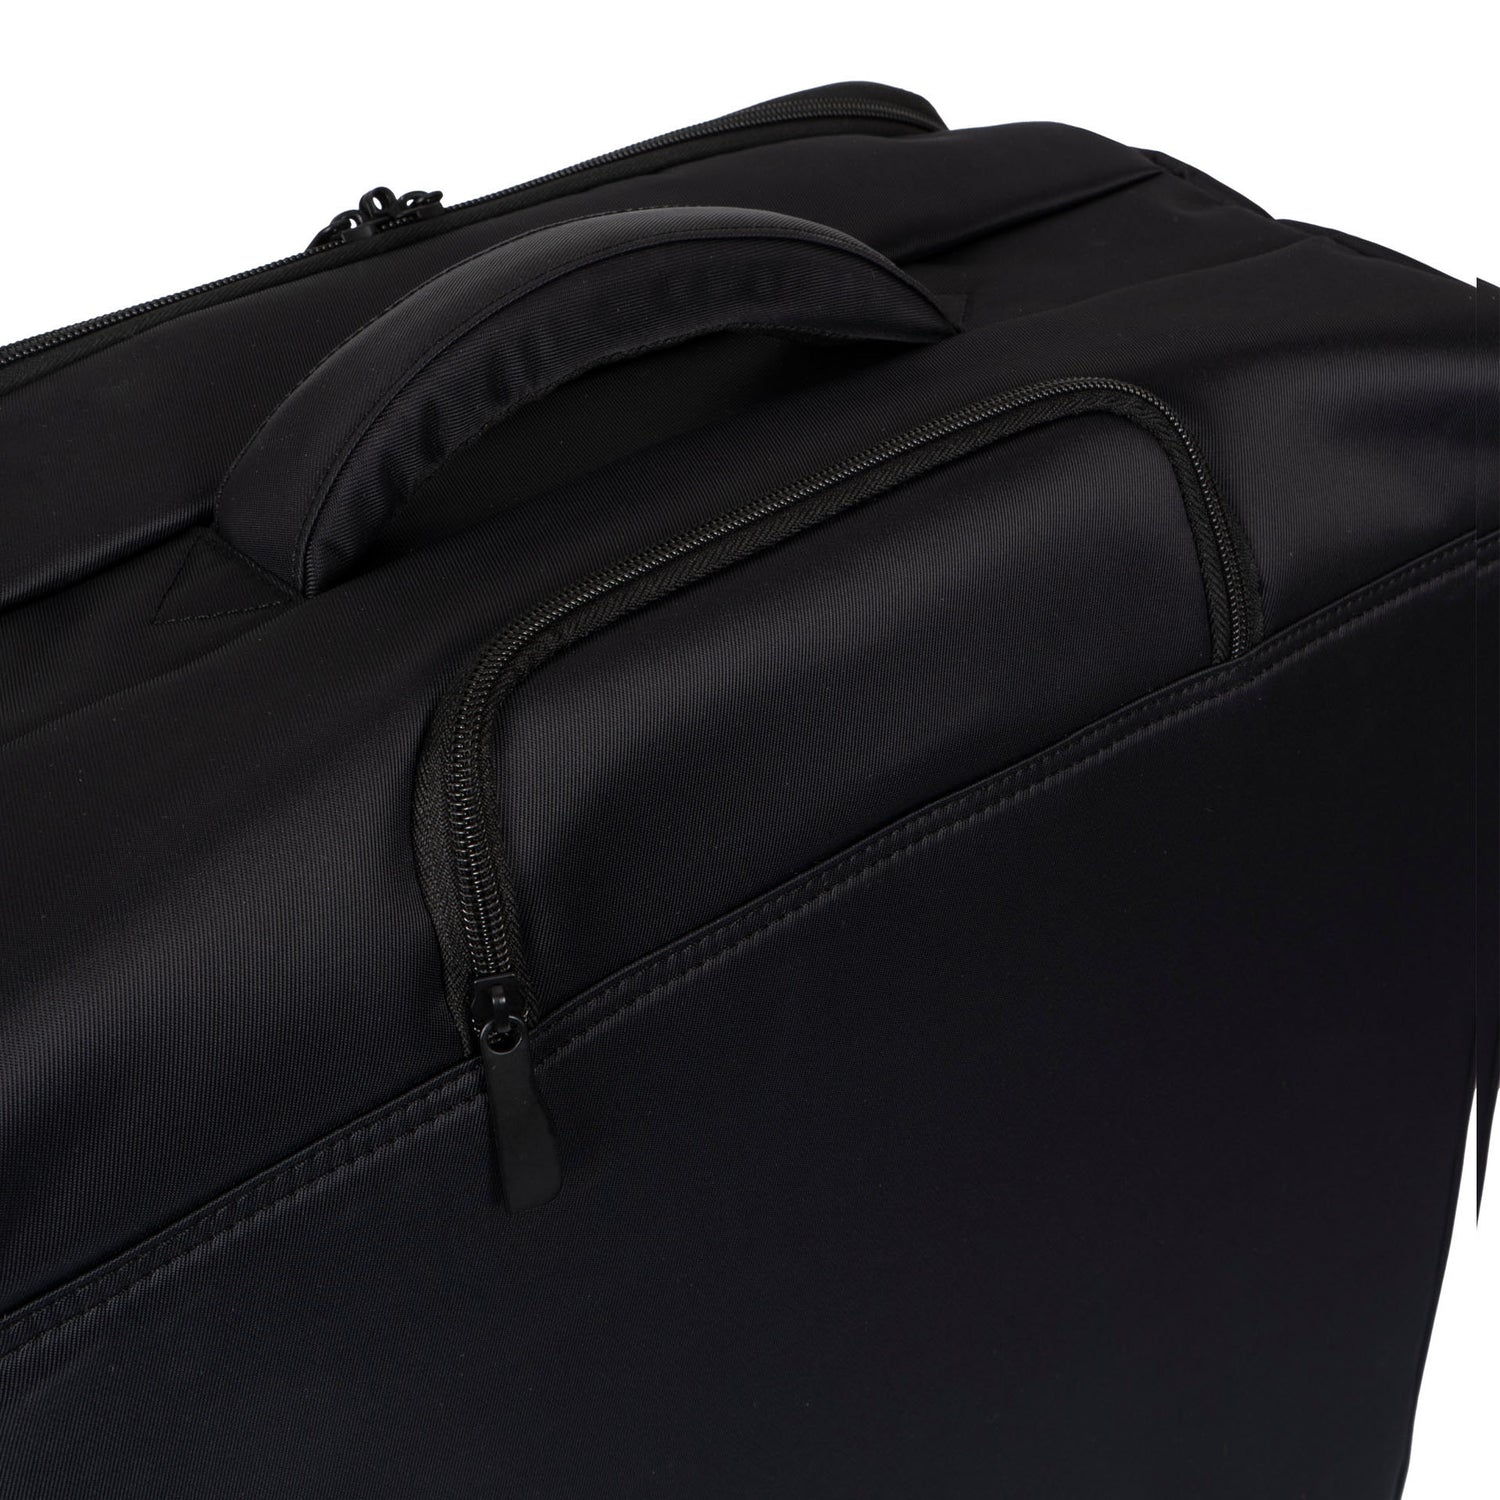 Nuage Softside 24.5'' Luggage -  - 

        Tracker
      
